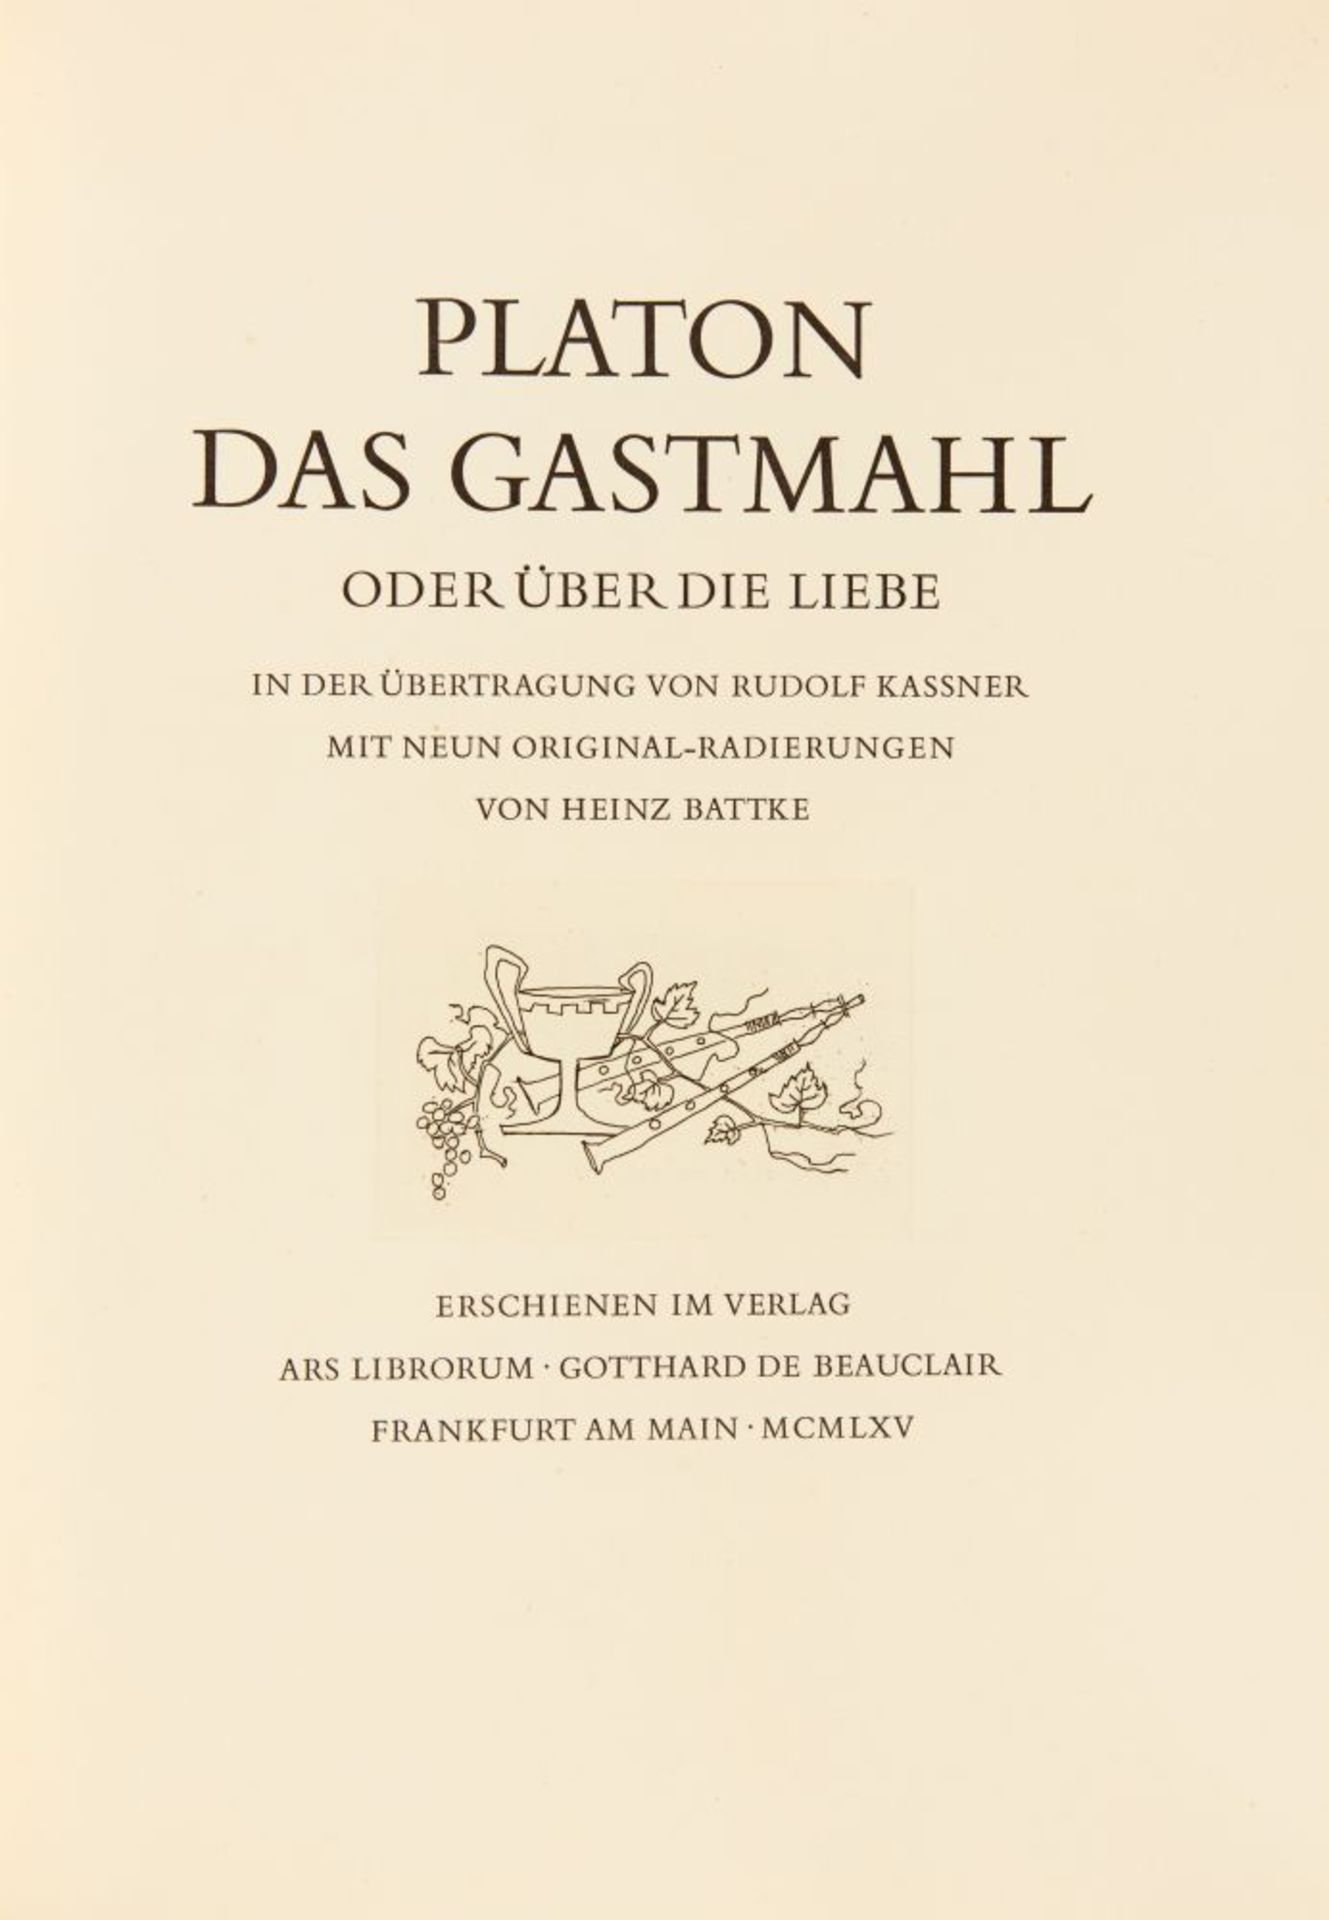 R. Kassner / H. Battke, Platon. Das Gastmahl. Ffm 1965. - Ex. IV/ 300. - Image 2 of 4